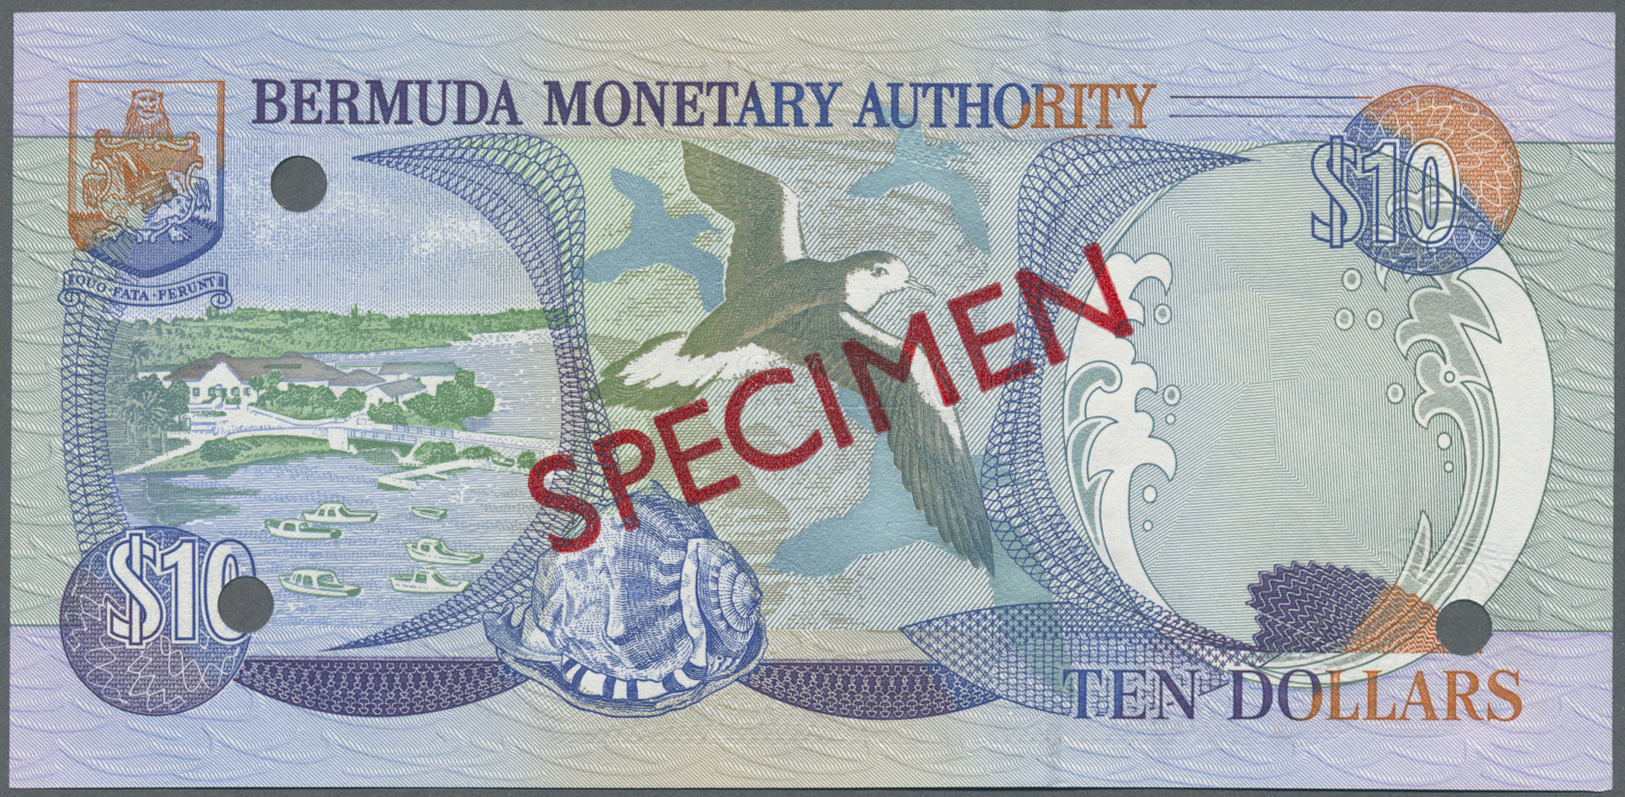 00314 Bermuda: complete set of 1 - 100 Dollars 2000 Specimen P. CS2, all in condition: UNC. (6 pcs)